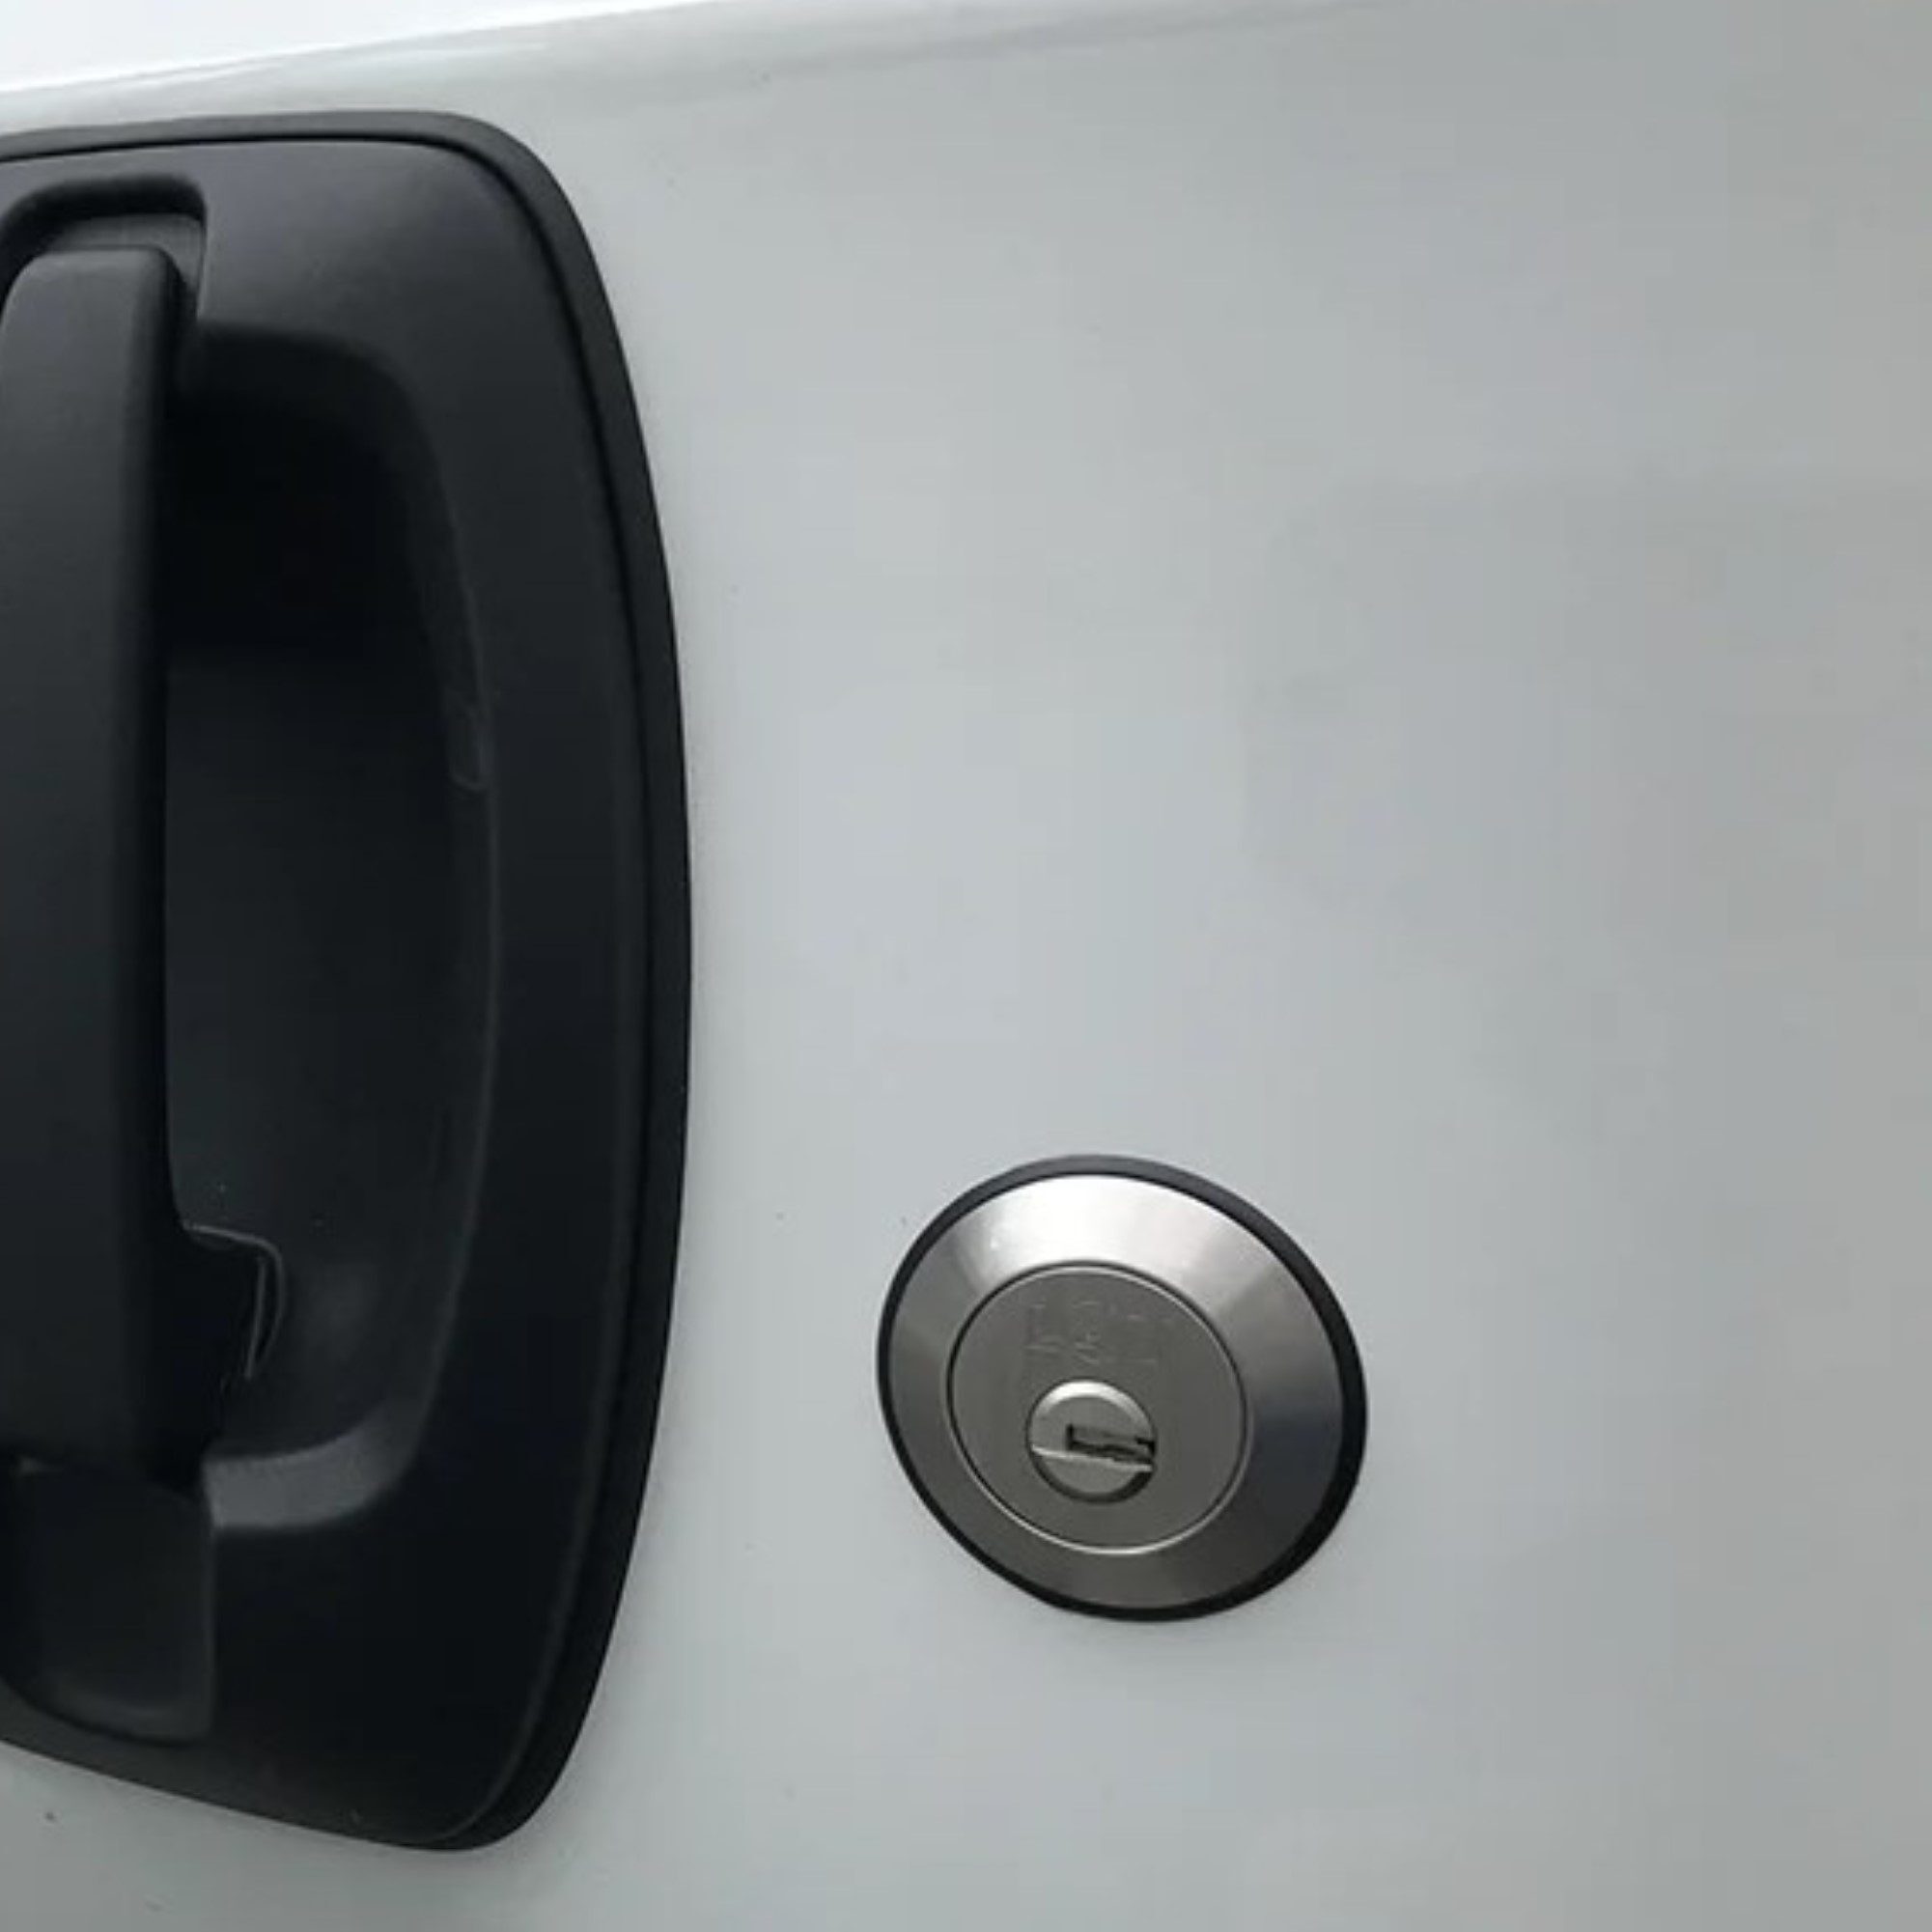 Slam Lock installed on a white van.